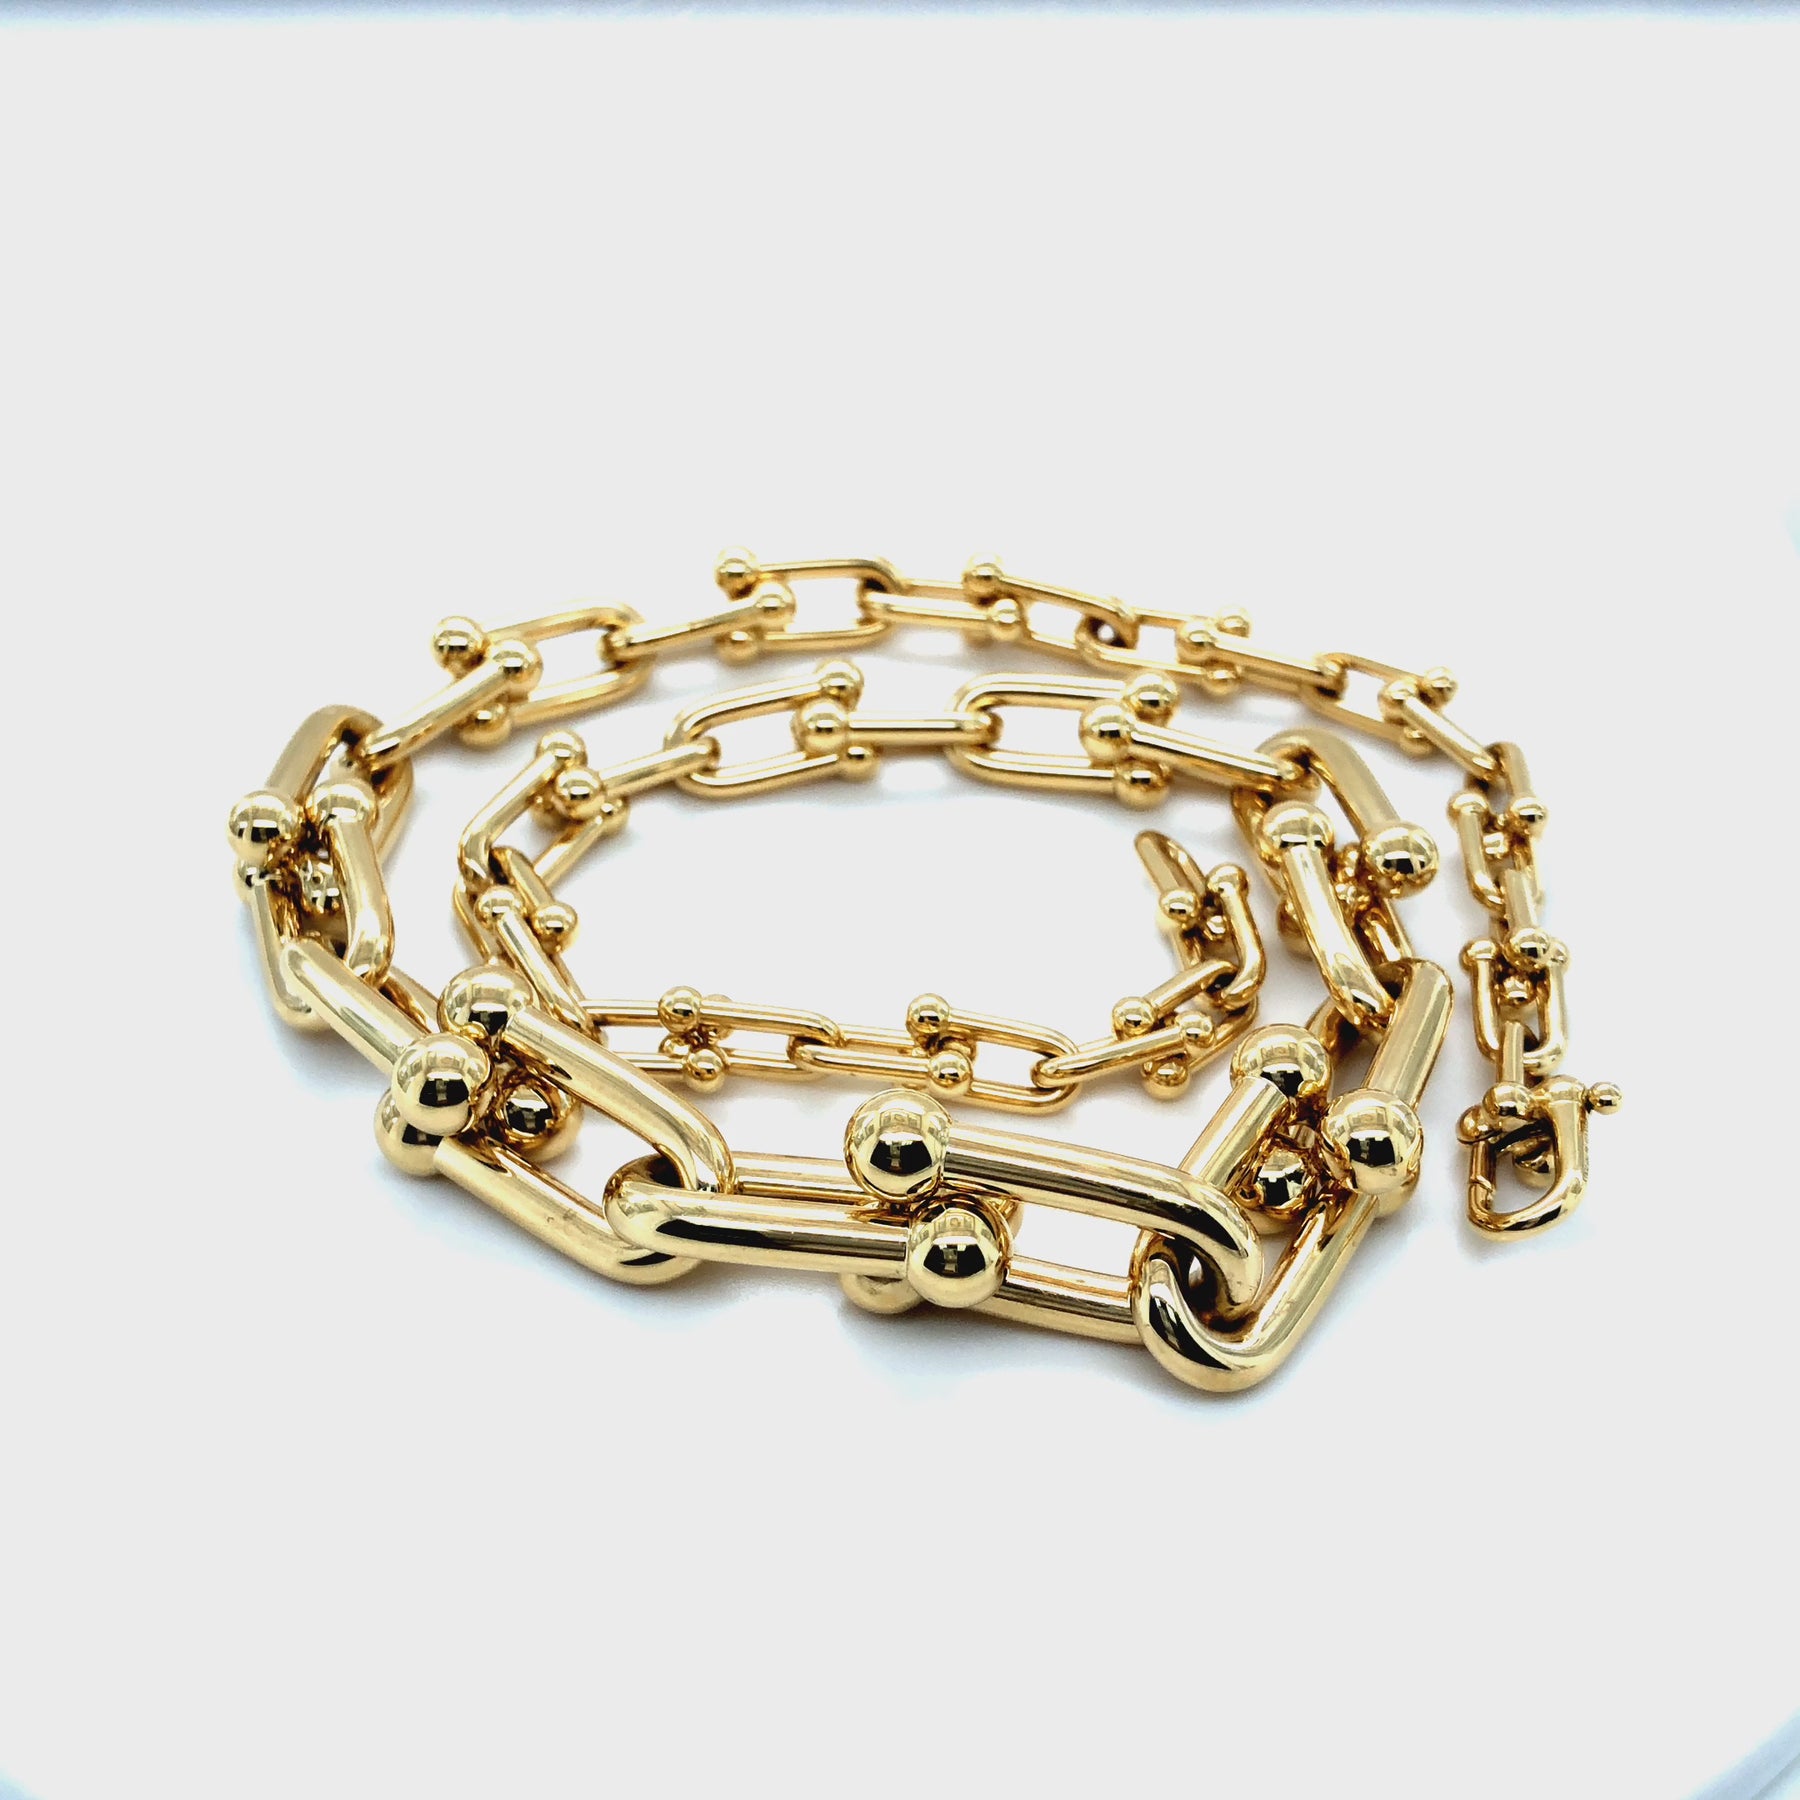 Tiffany Chain Necklace – Paradigm Design